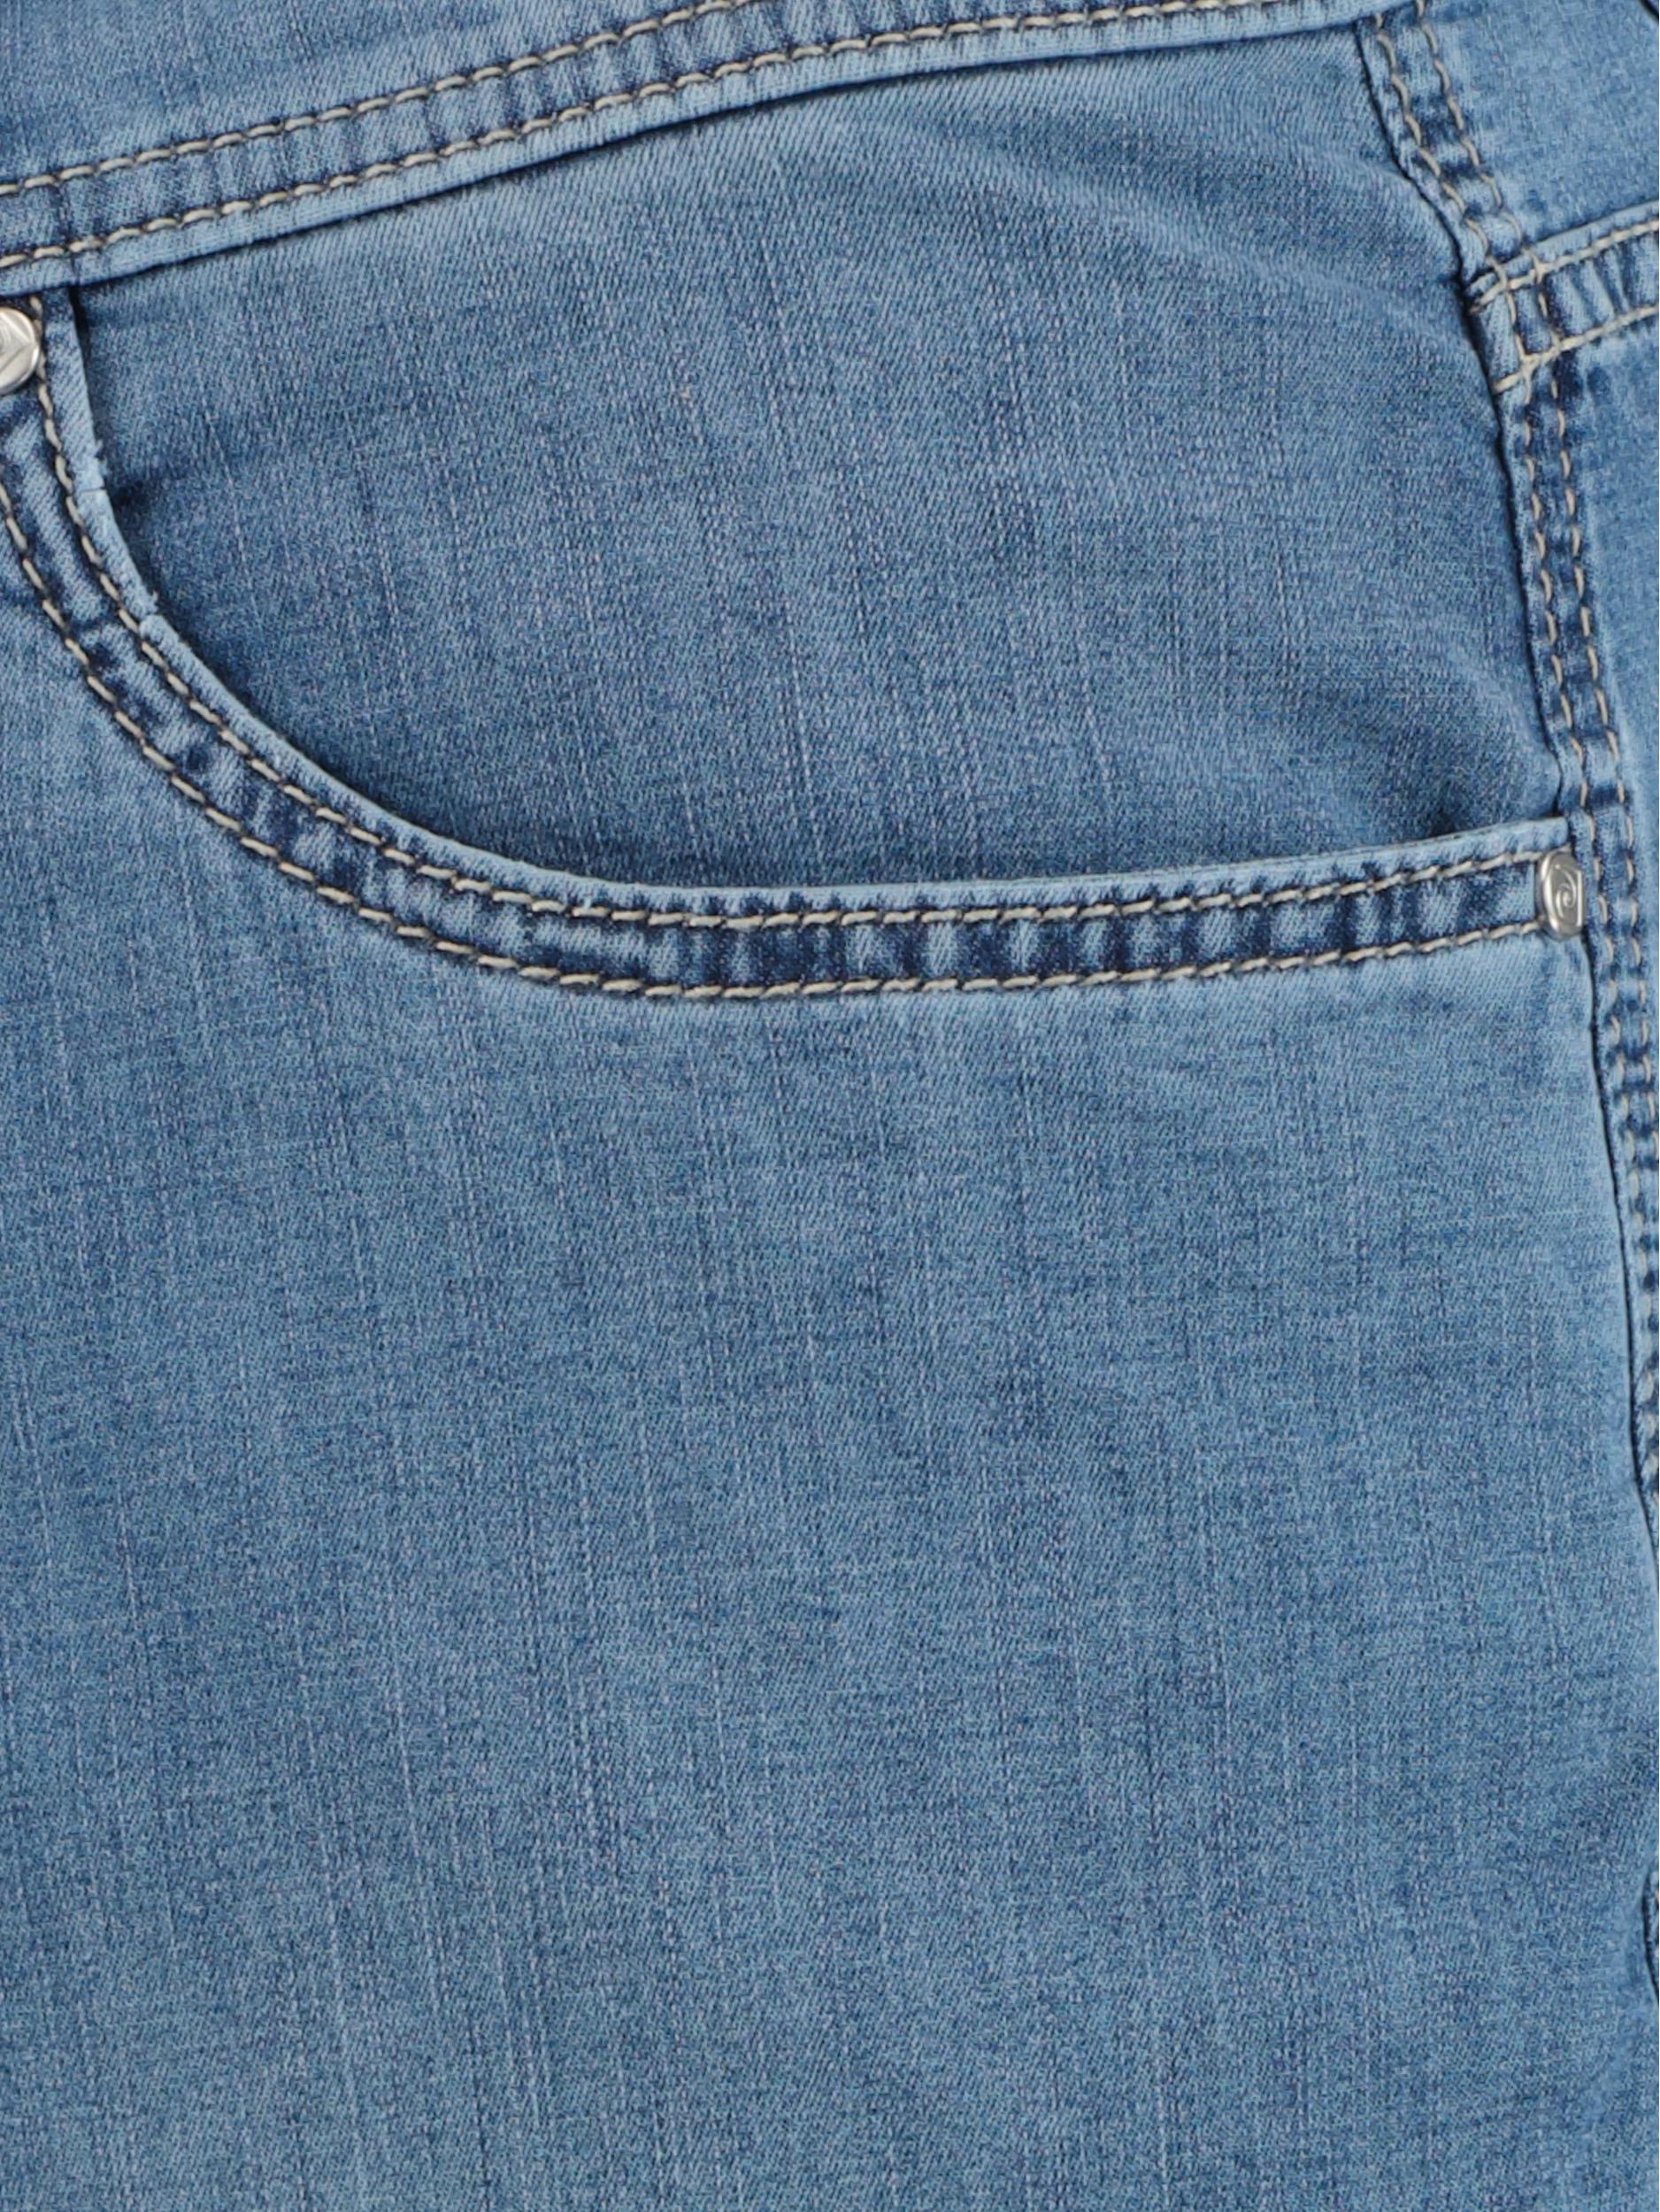 Pierre Cardin 5-Pocket Jeans Blauw  C7 34510.7730/6847